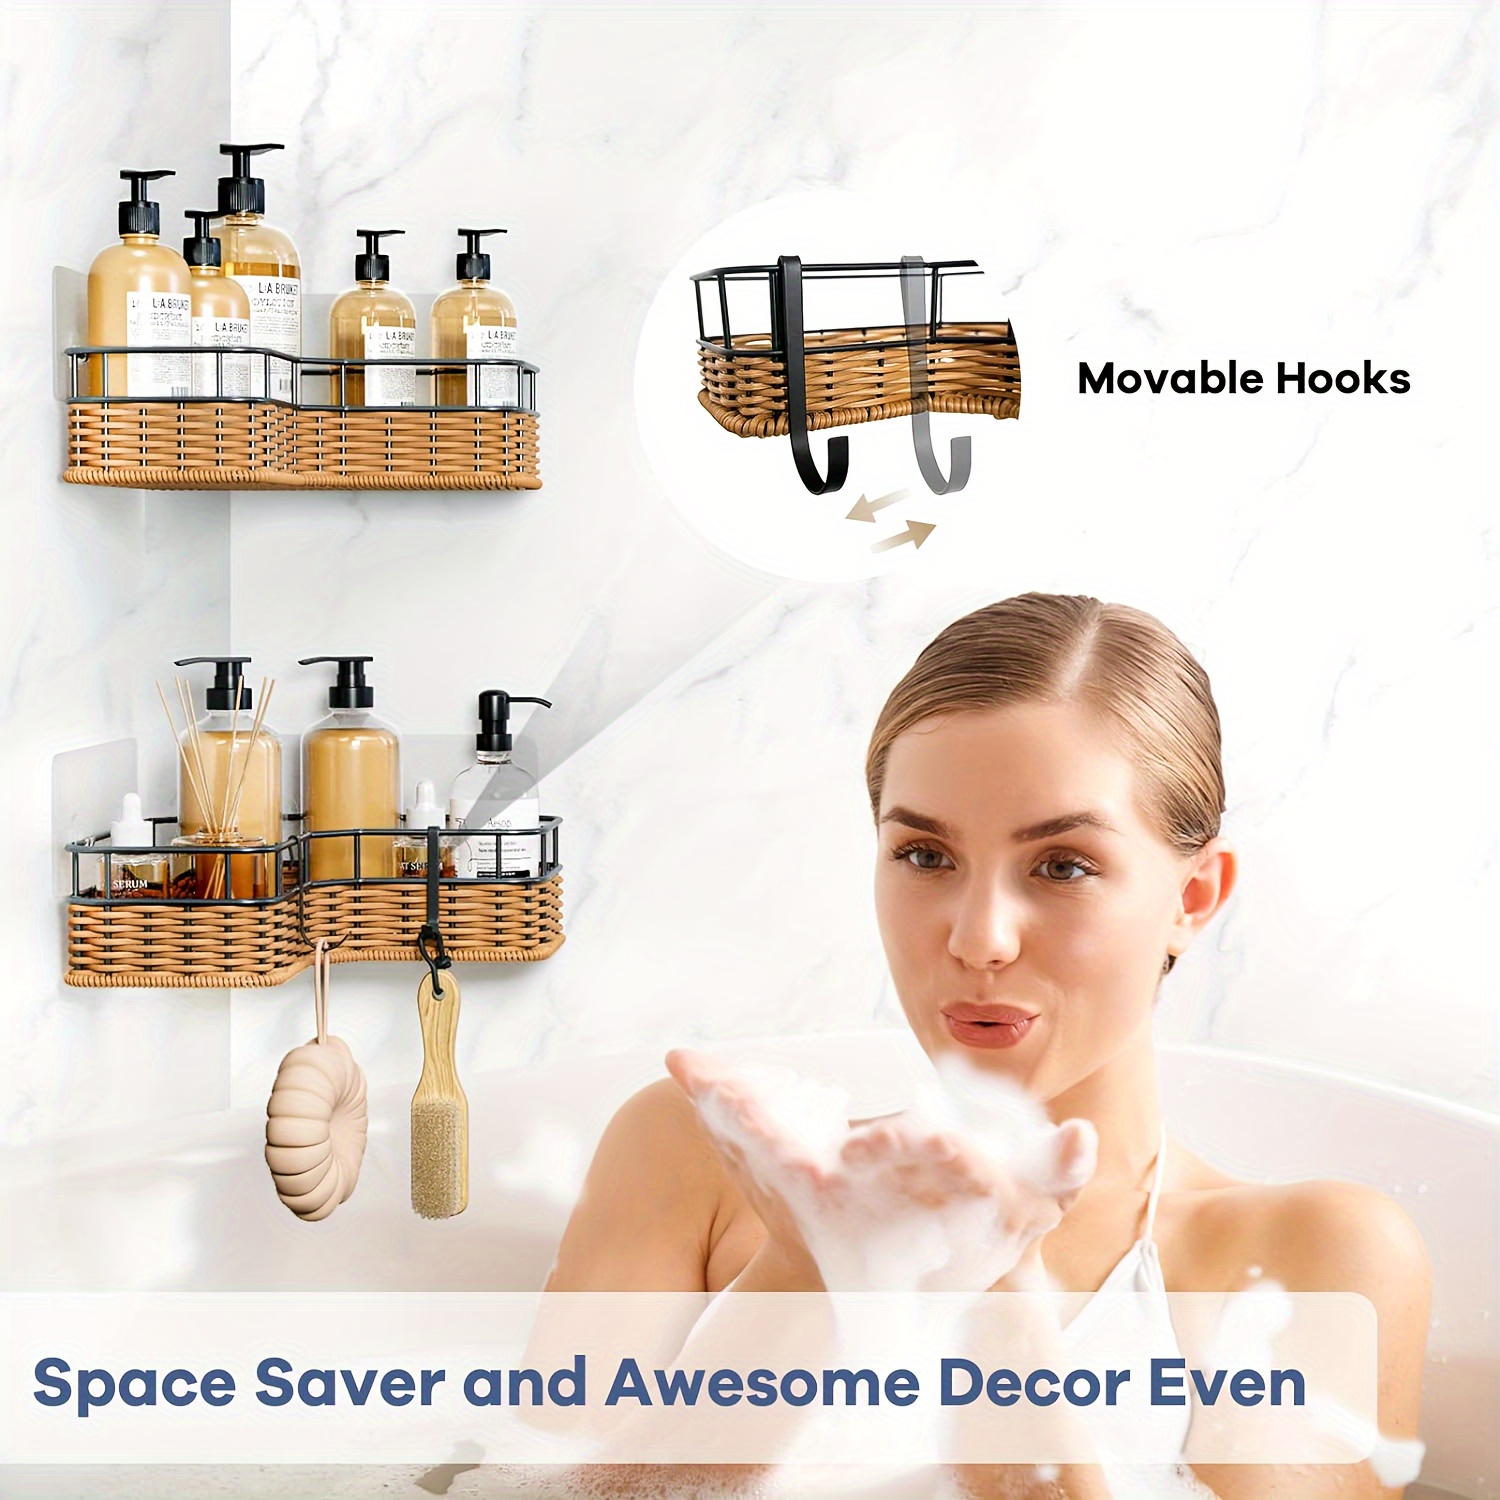 Corner Shower Caddy Adhesive Shower Corner Organizer Shelves - Temu